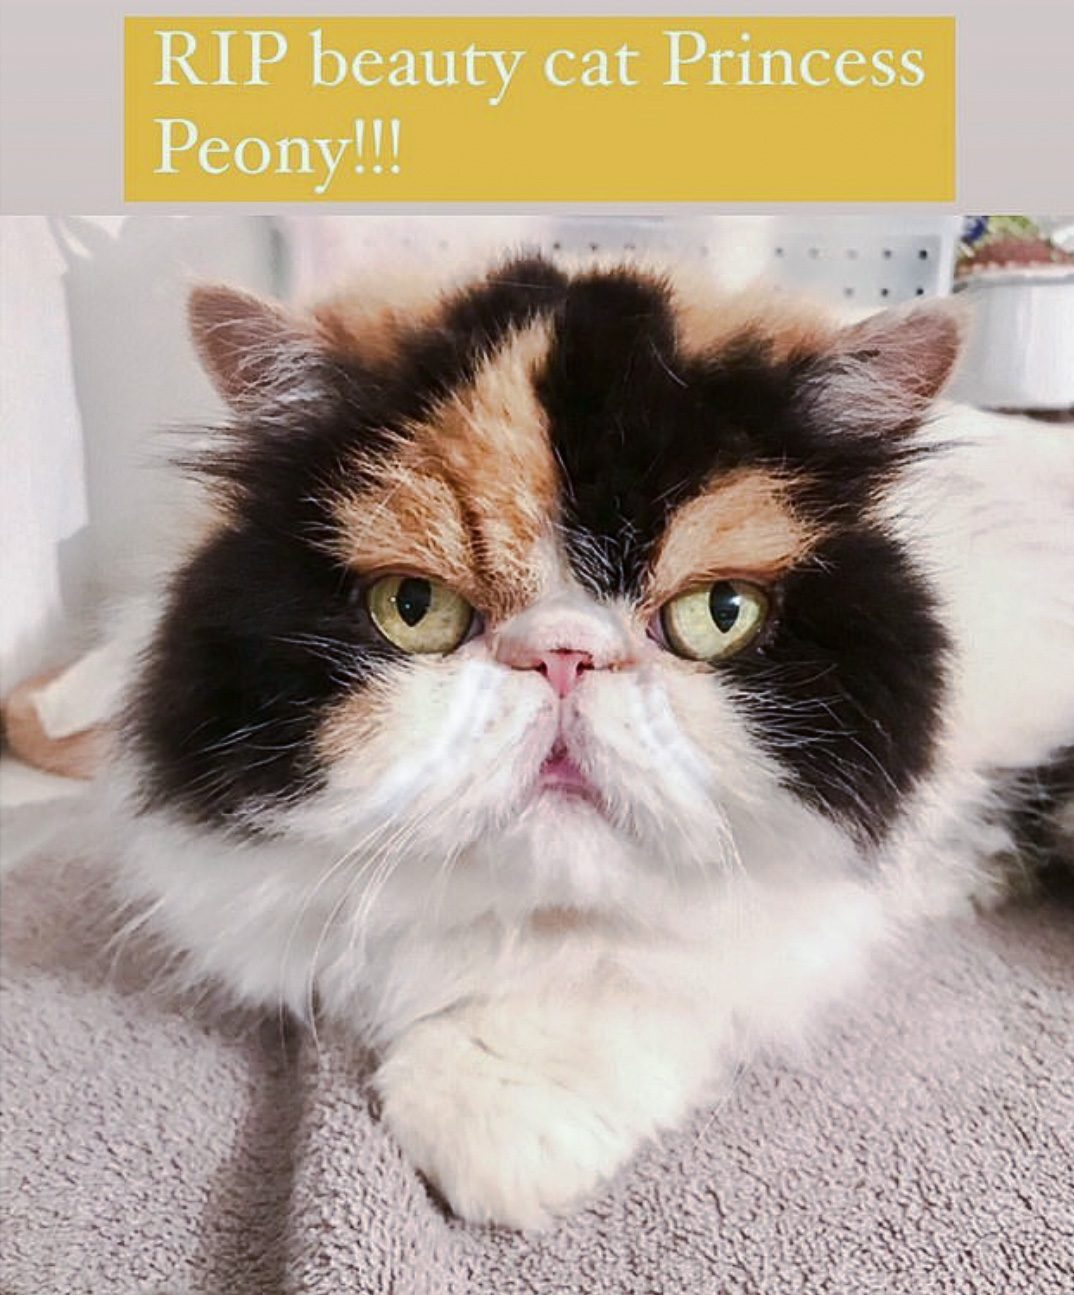 RIP Princess Peony